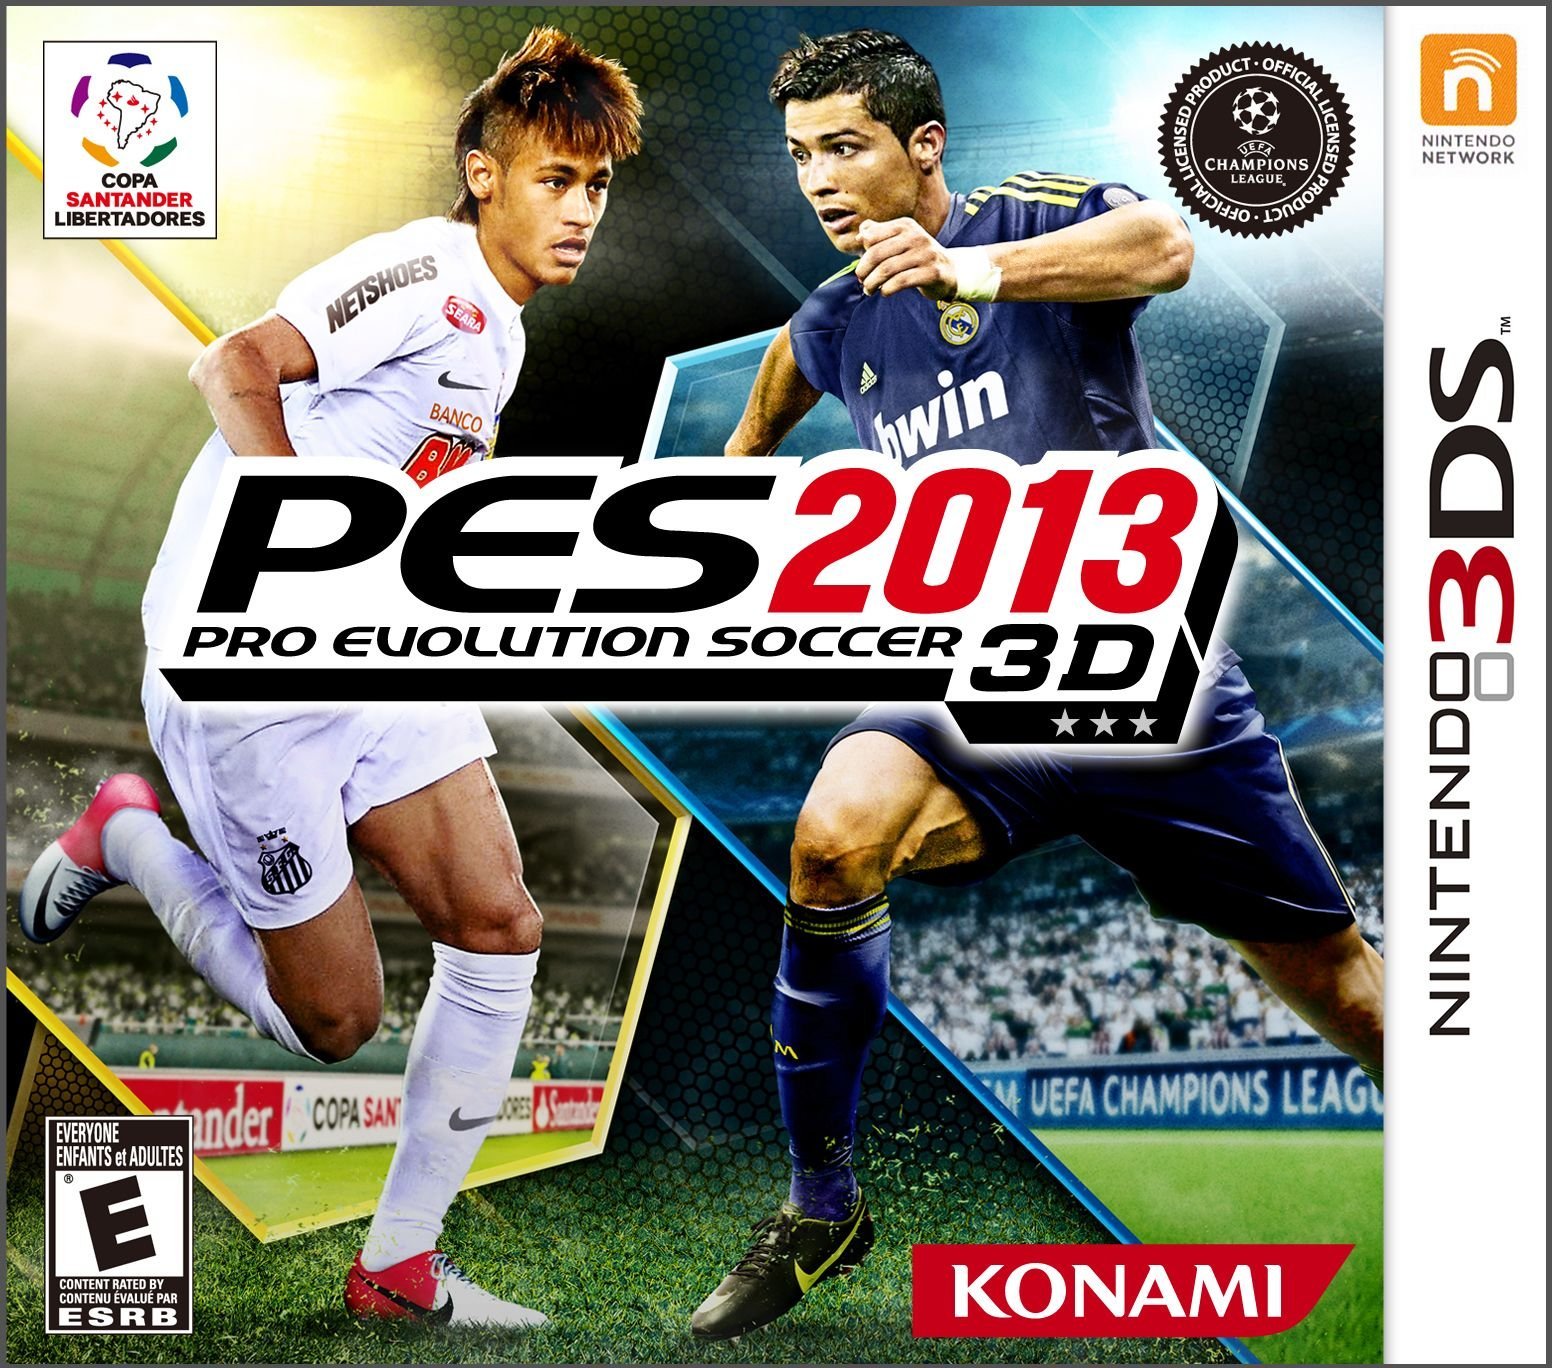 Image of Pro Evolution Soccer 2013 3D